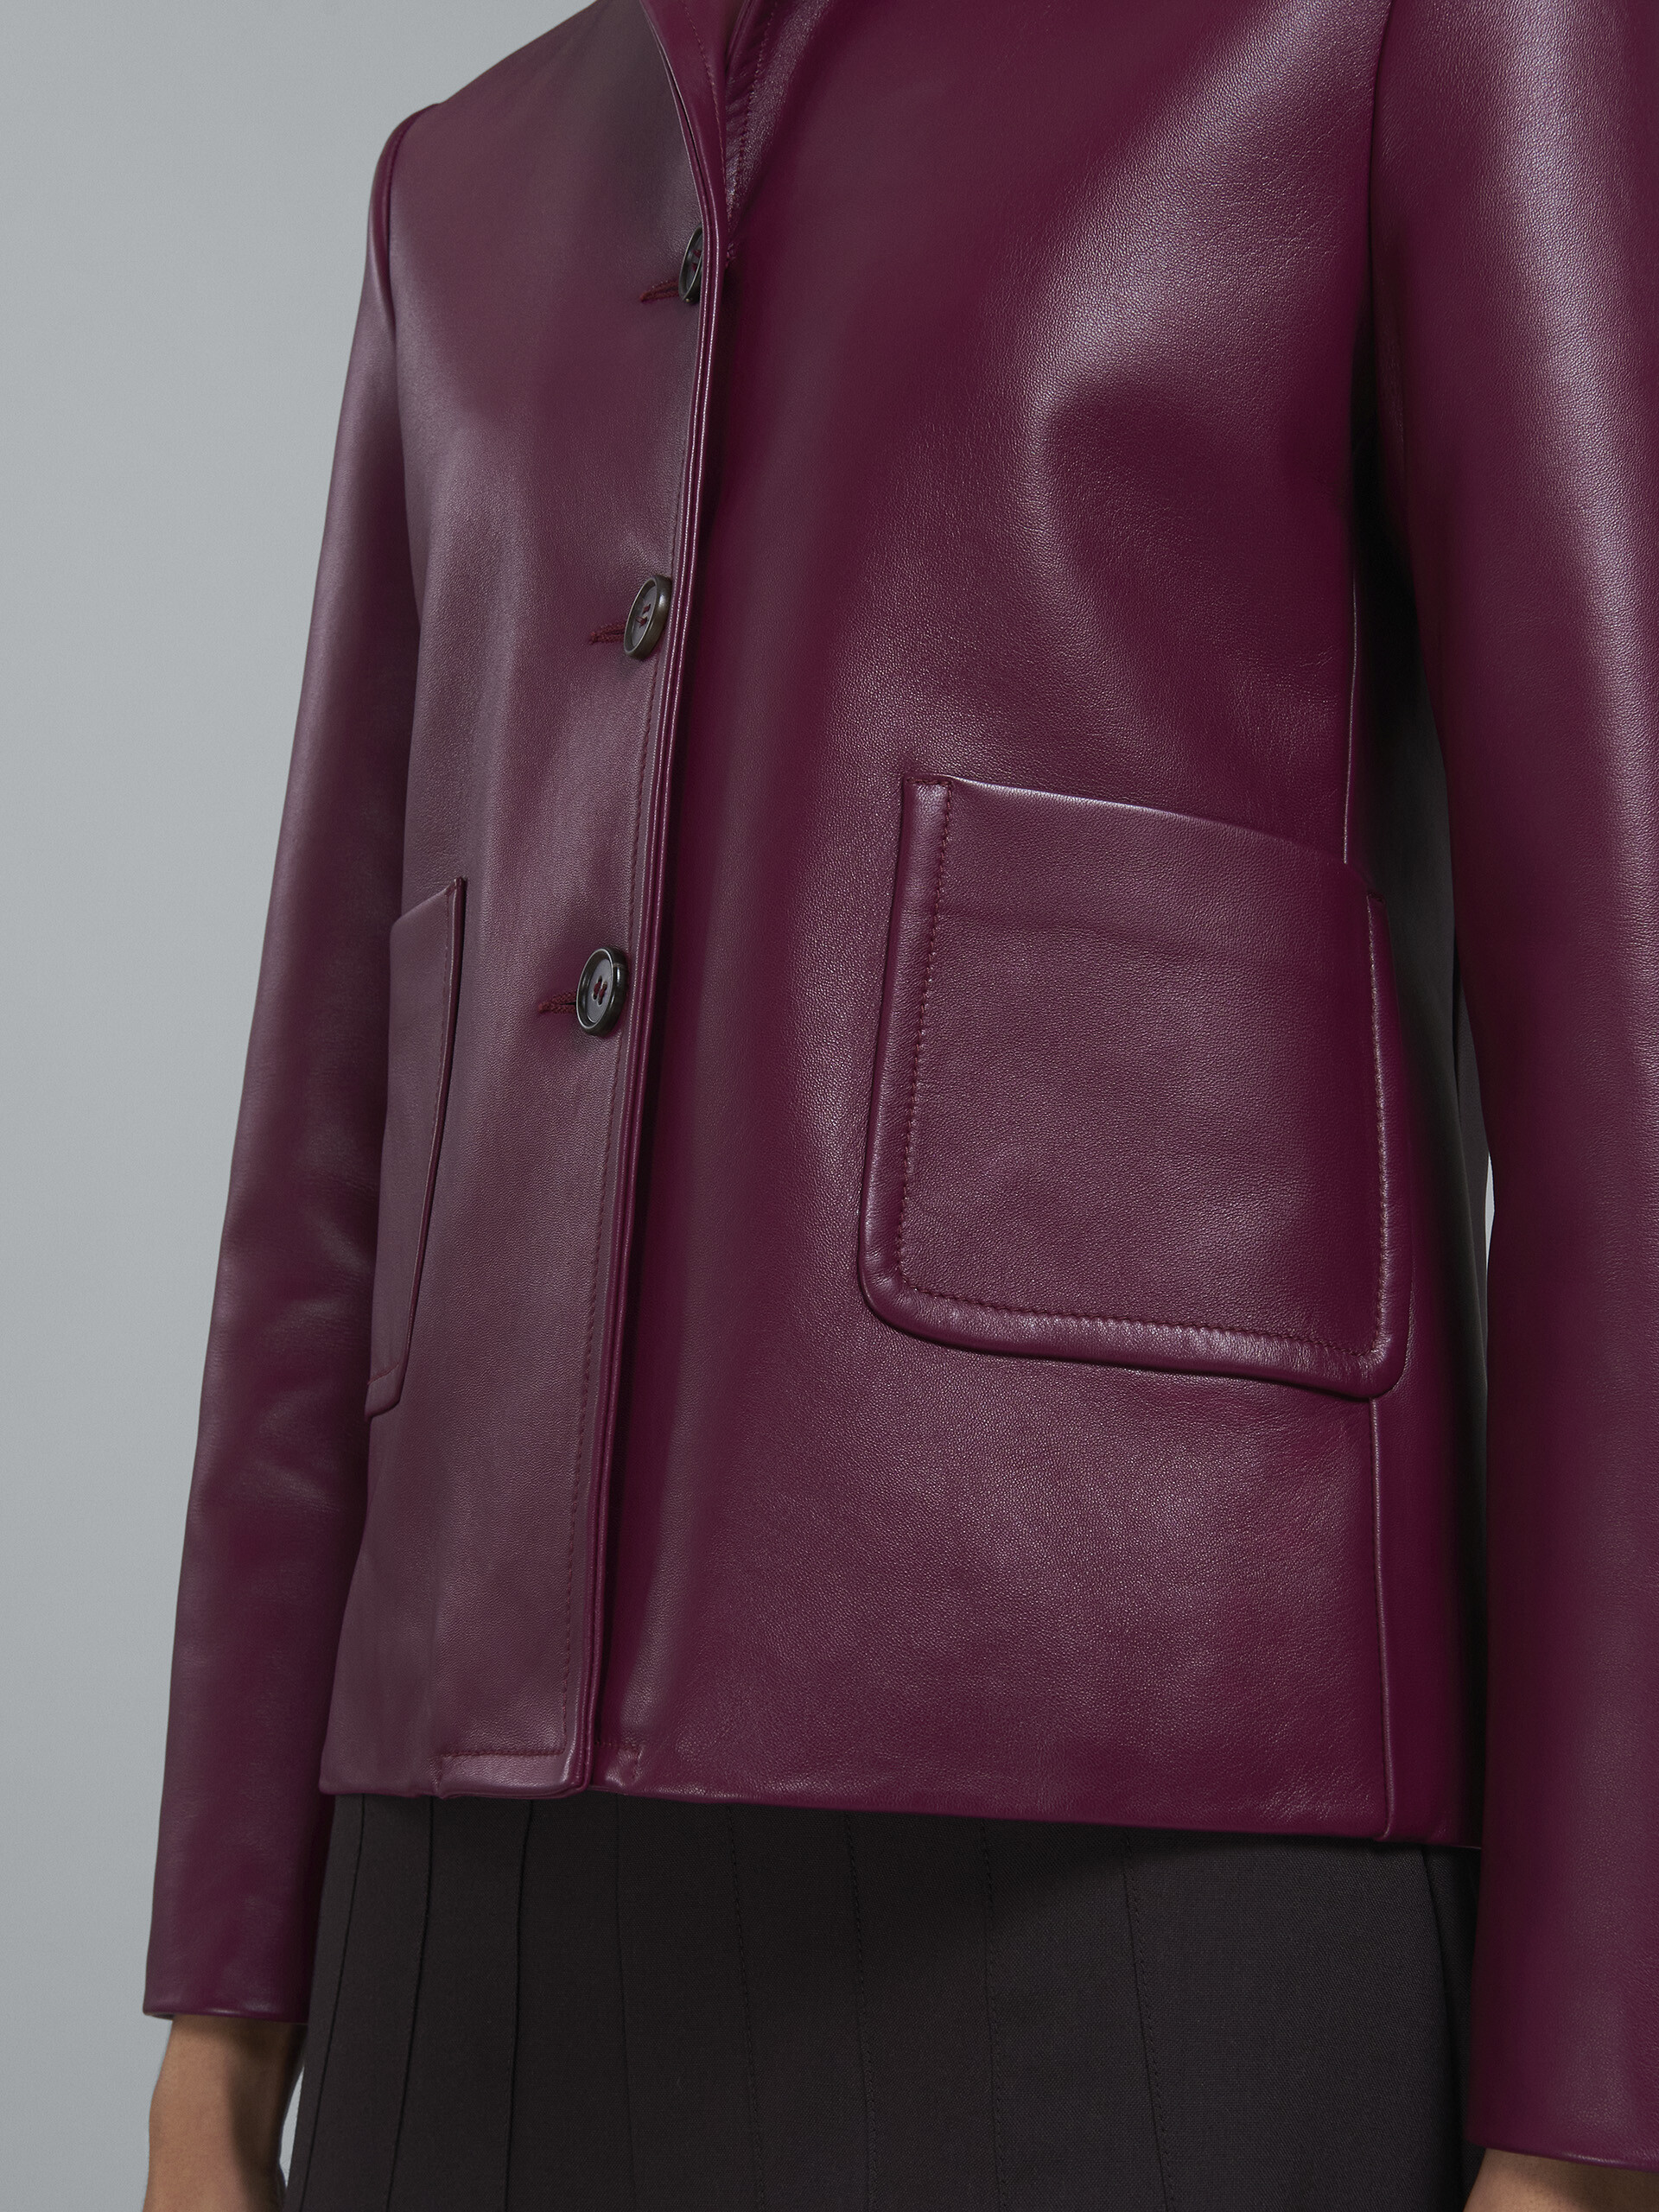 Leather jacket - Jackets - Image 5